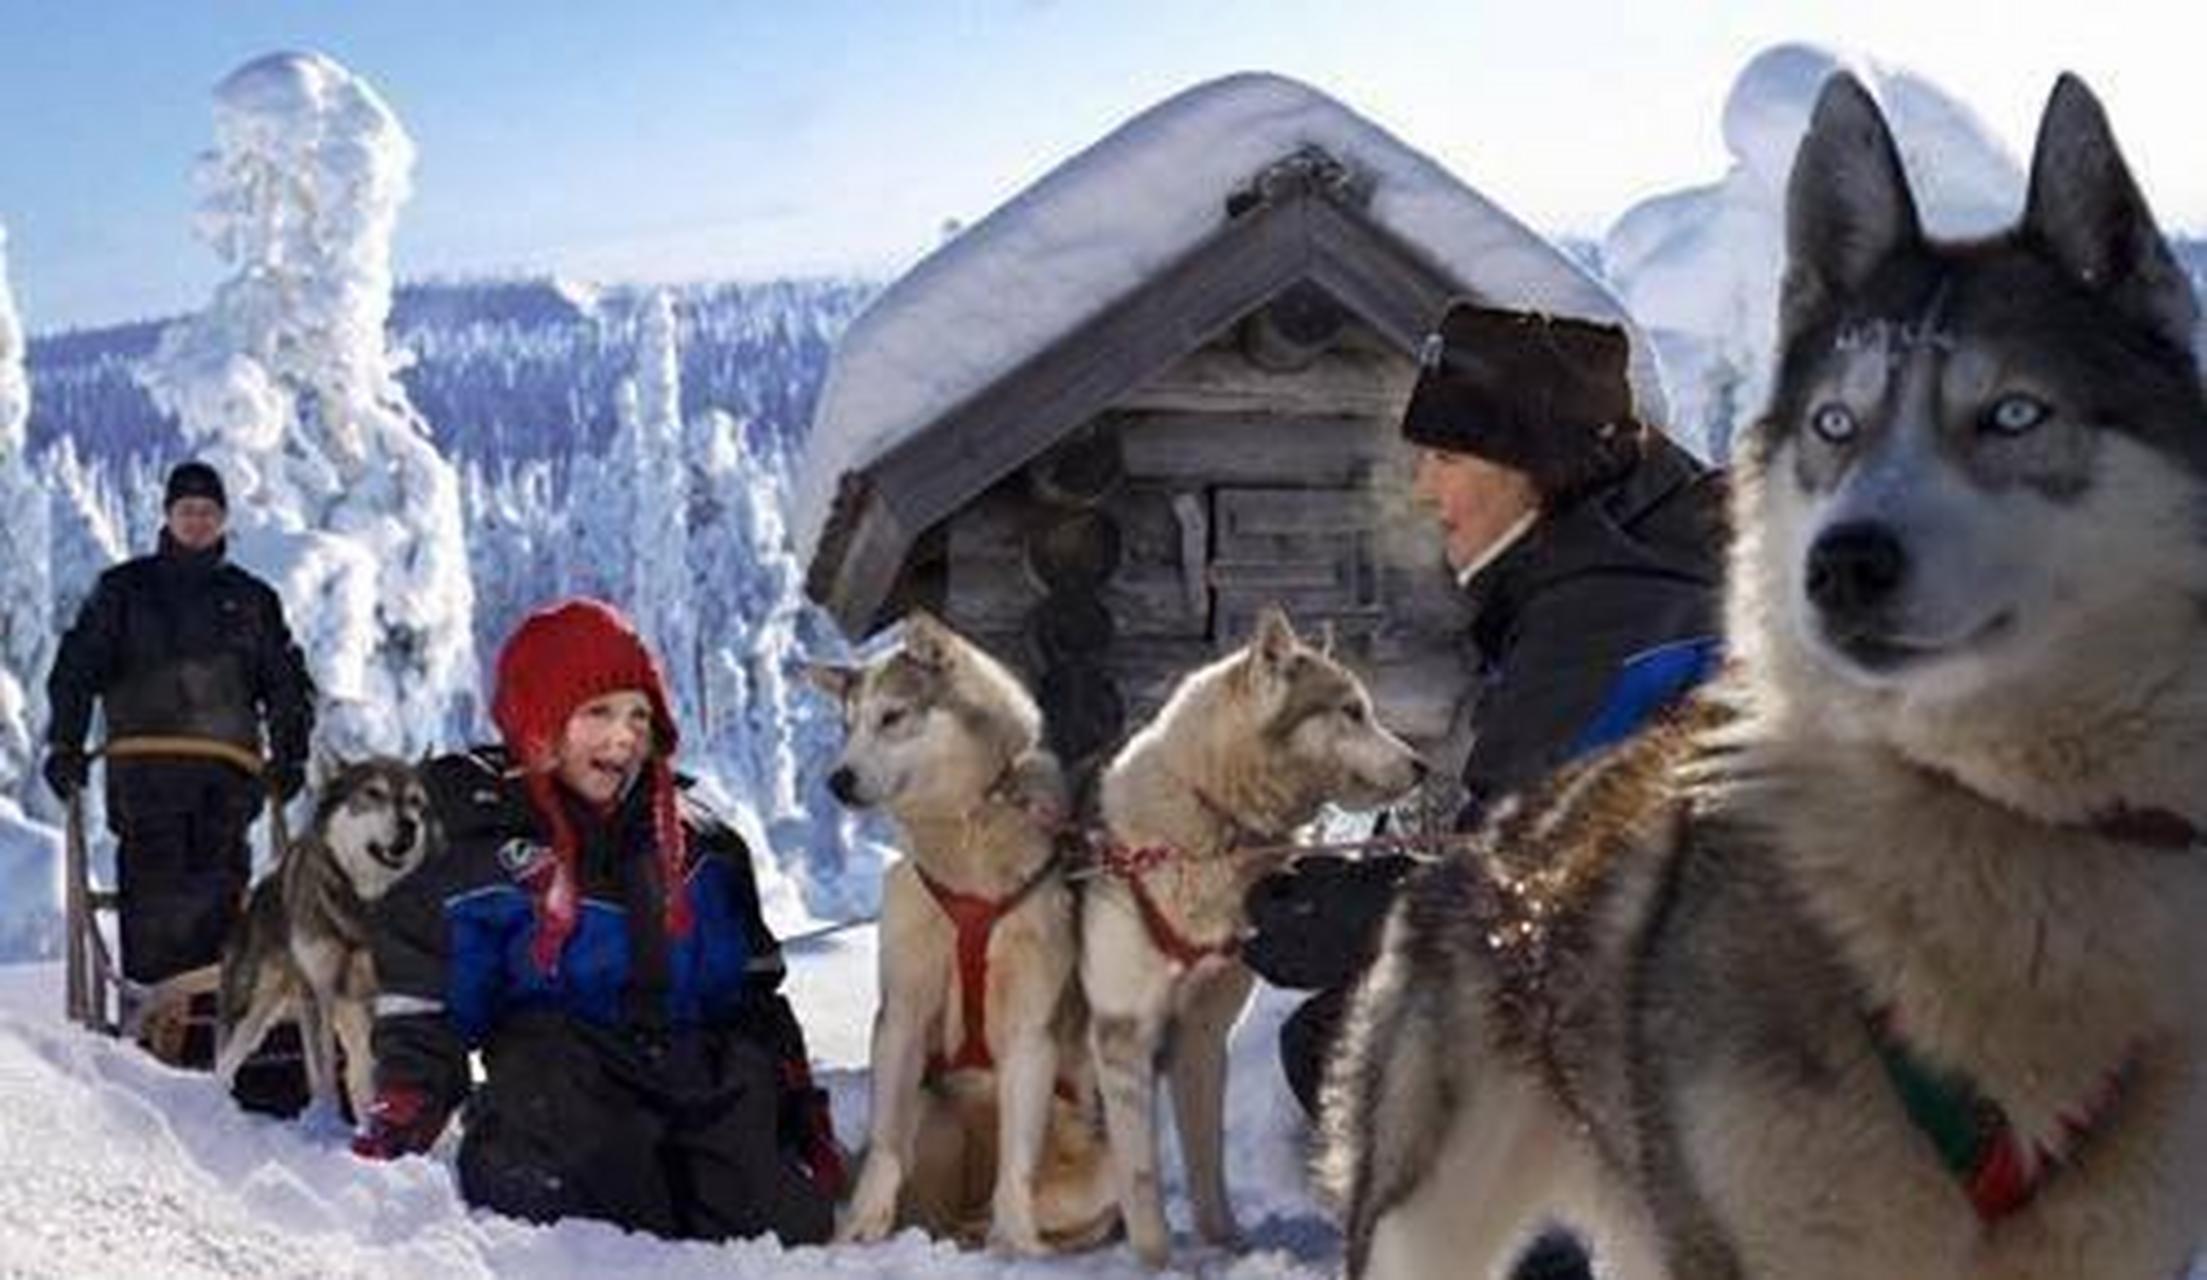 萨米人和芬兰人是北欧地区的两个民族,共同生活在极地地区,萨米人是